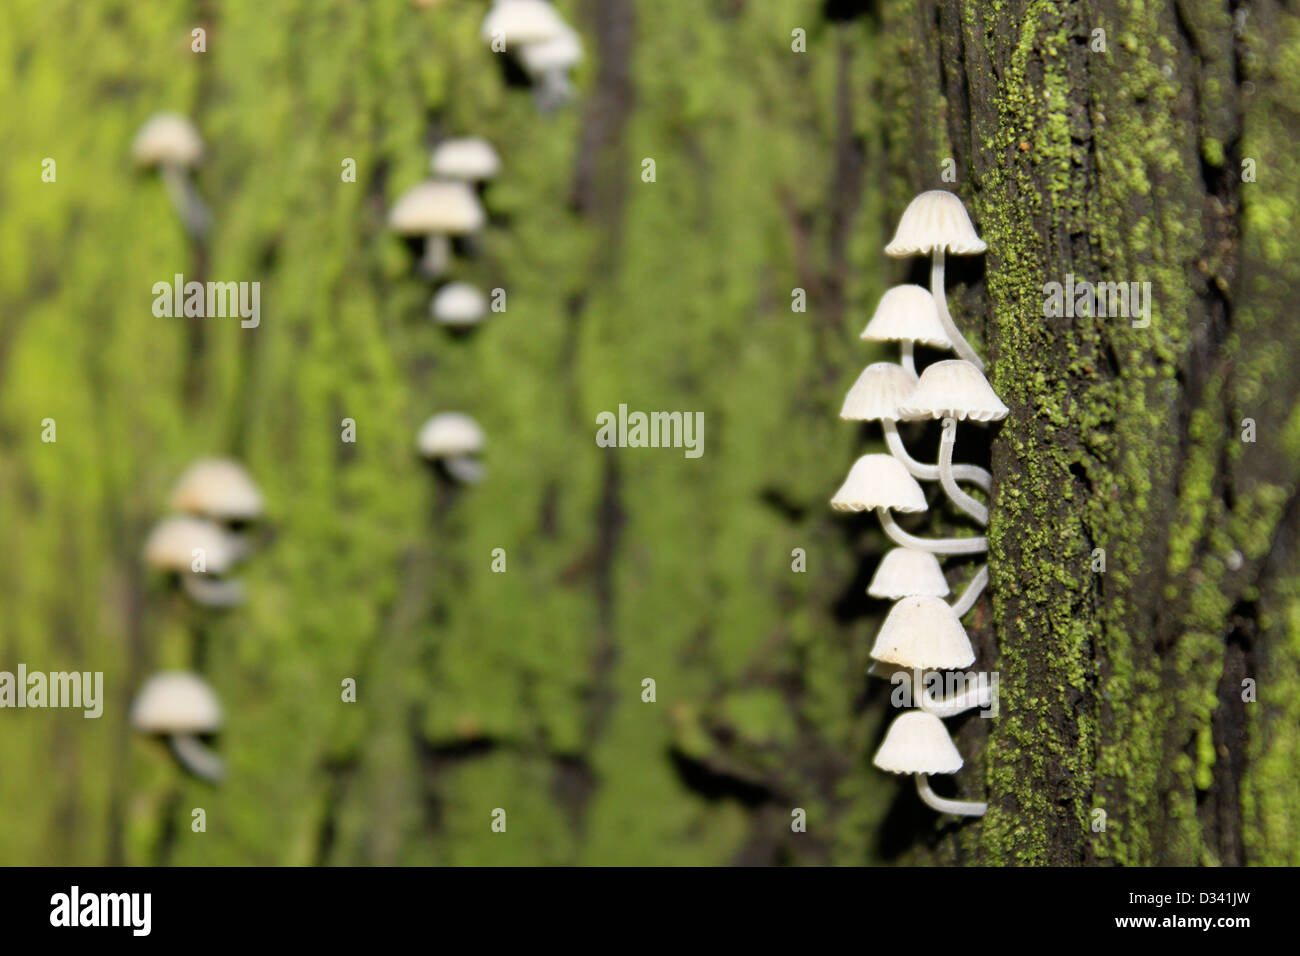 Funghi Su corteccia Stockfoto